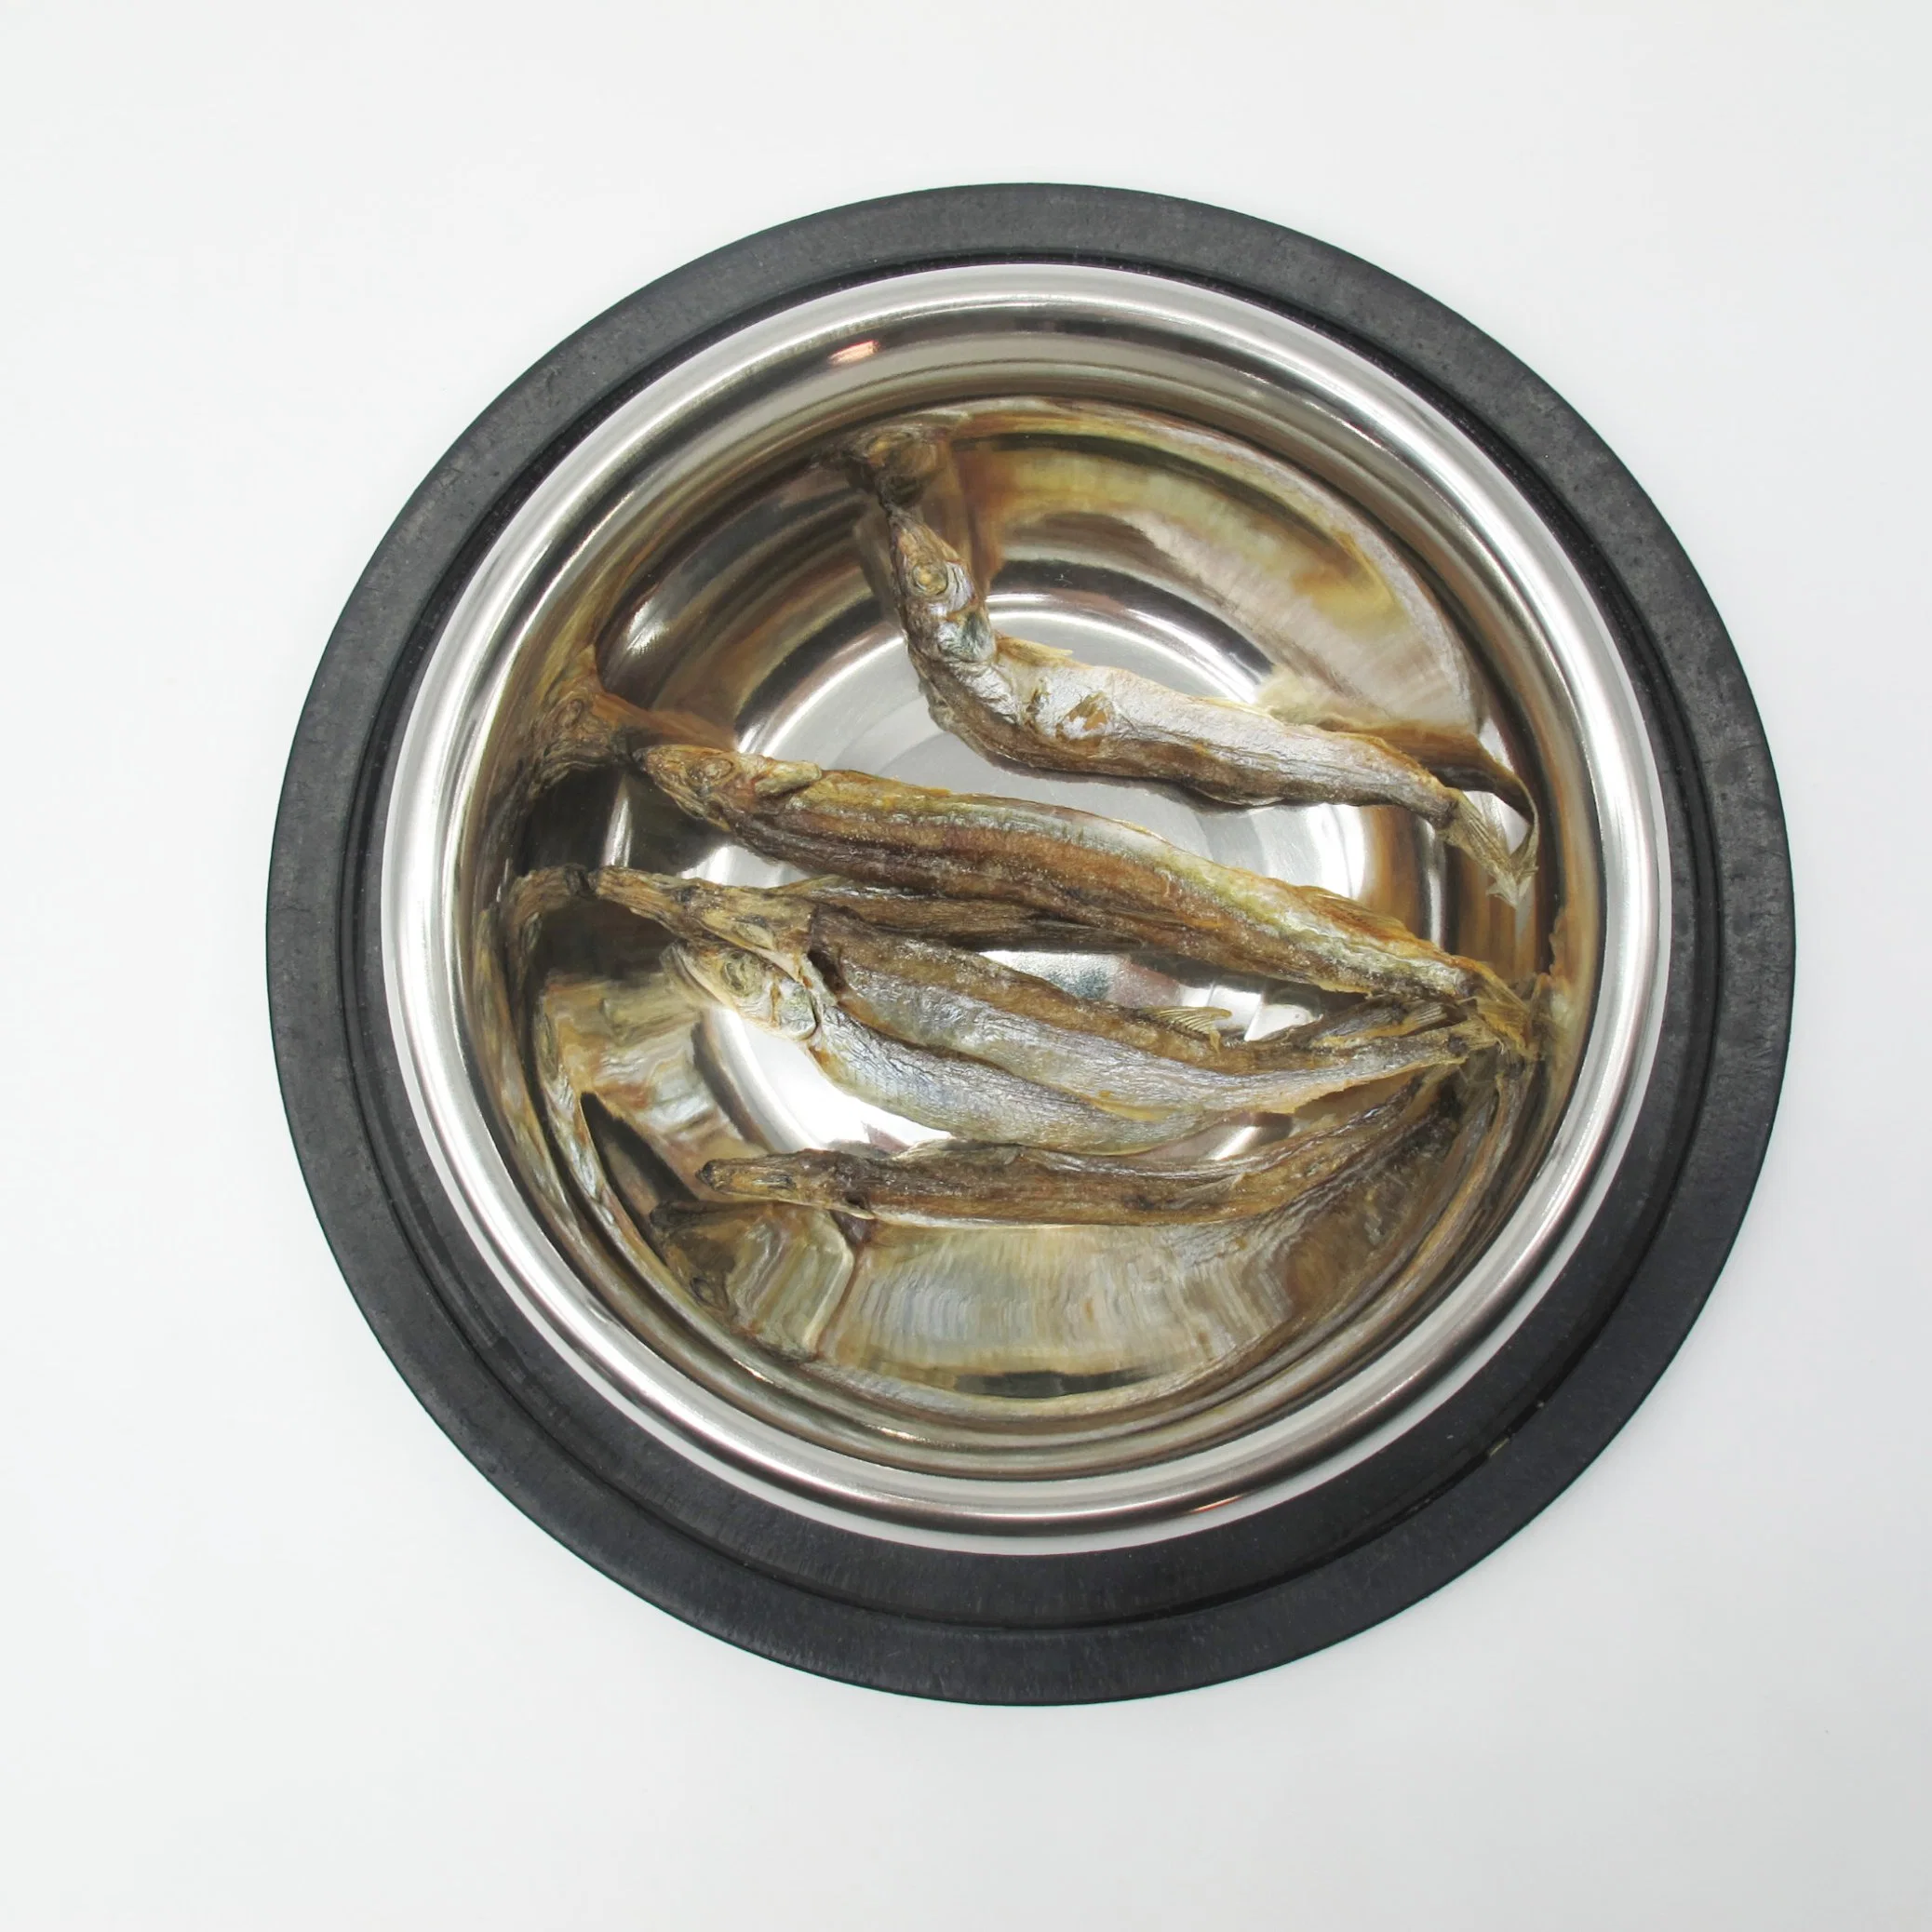 الغذاء الأسماك العرض لذيذ الذوق الطازج التغذية الكالسيوم الملحق تجميد - مجفف السمك الحيوانات الأليفة الطعام كلب علاج قطة الوجبات الخفيفة